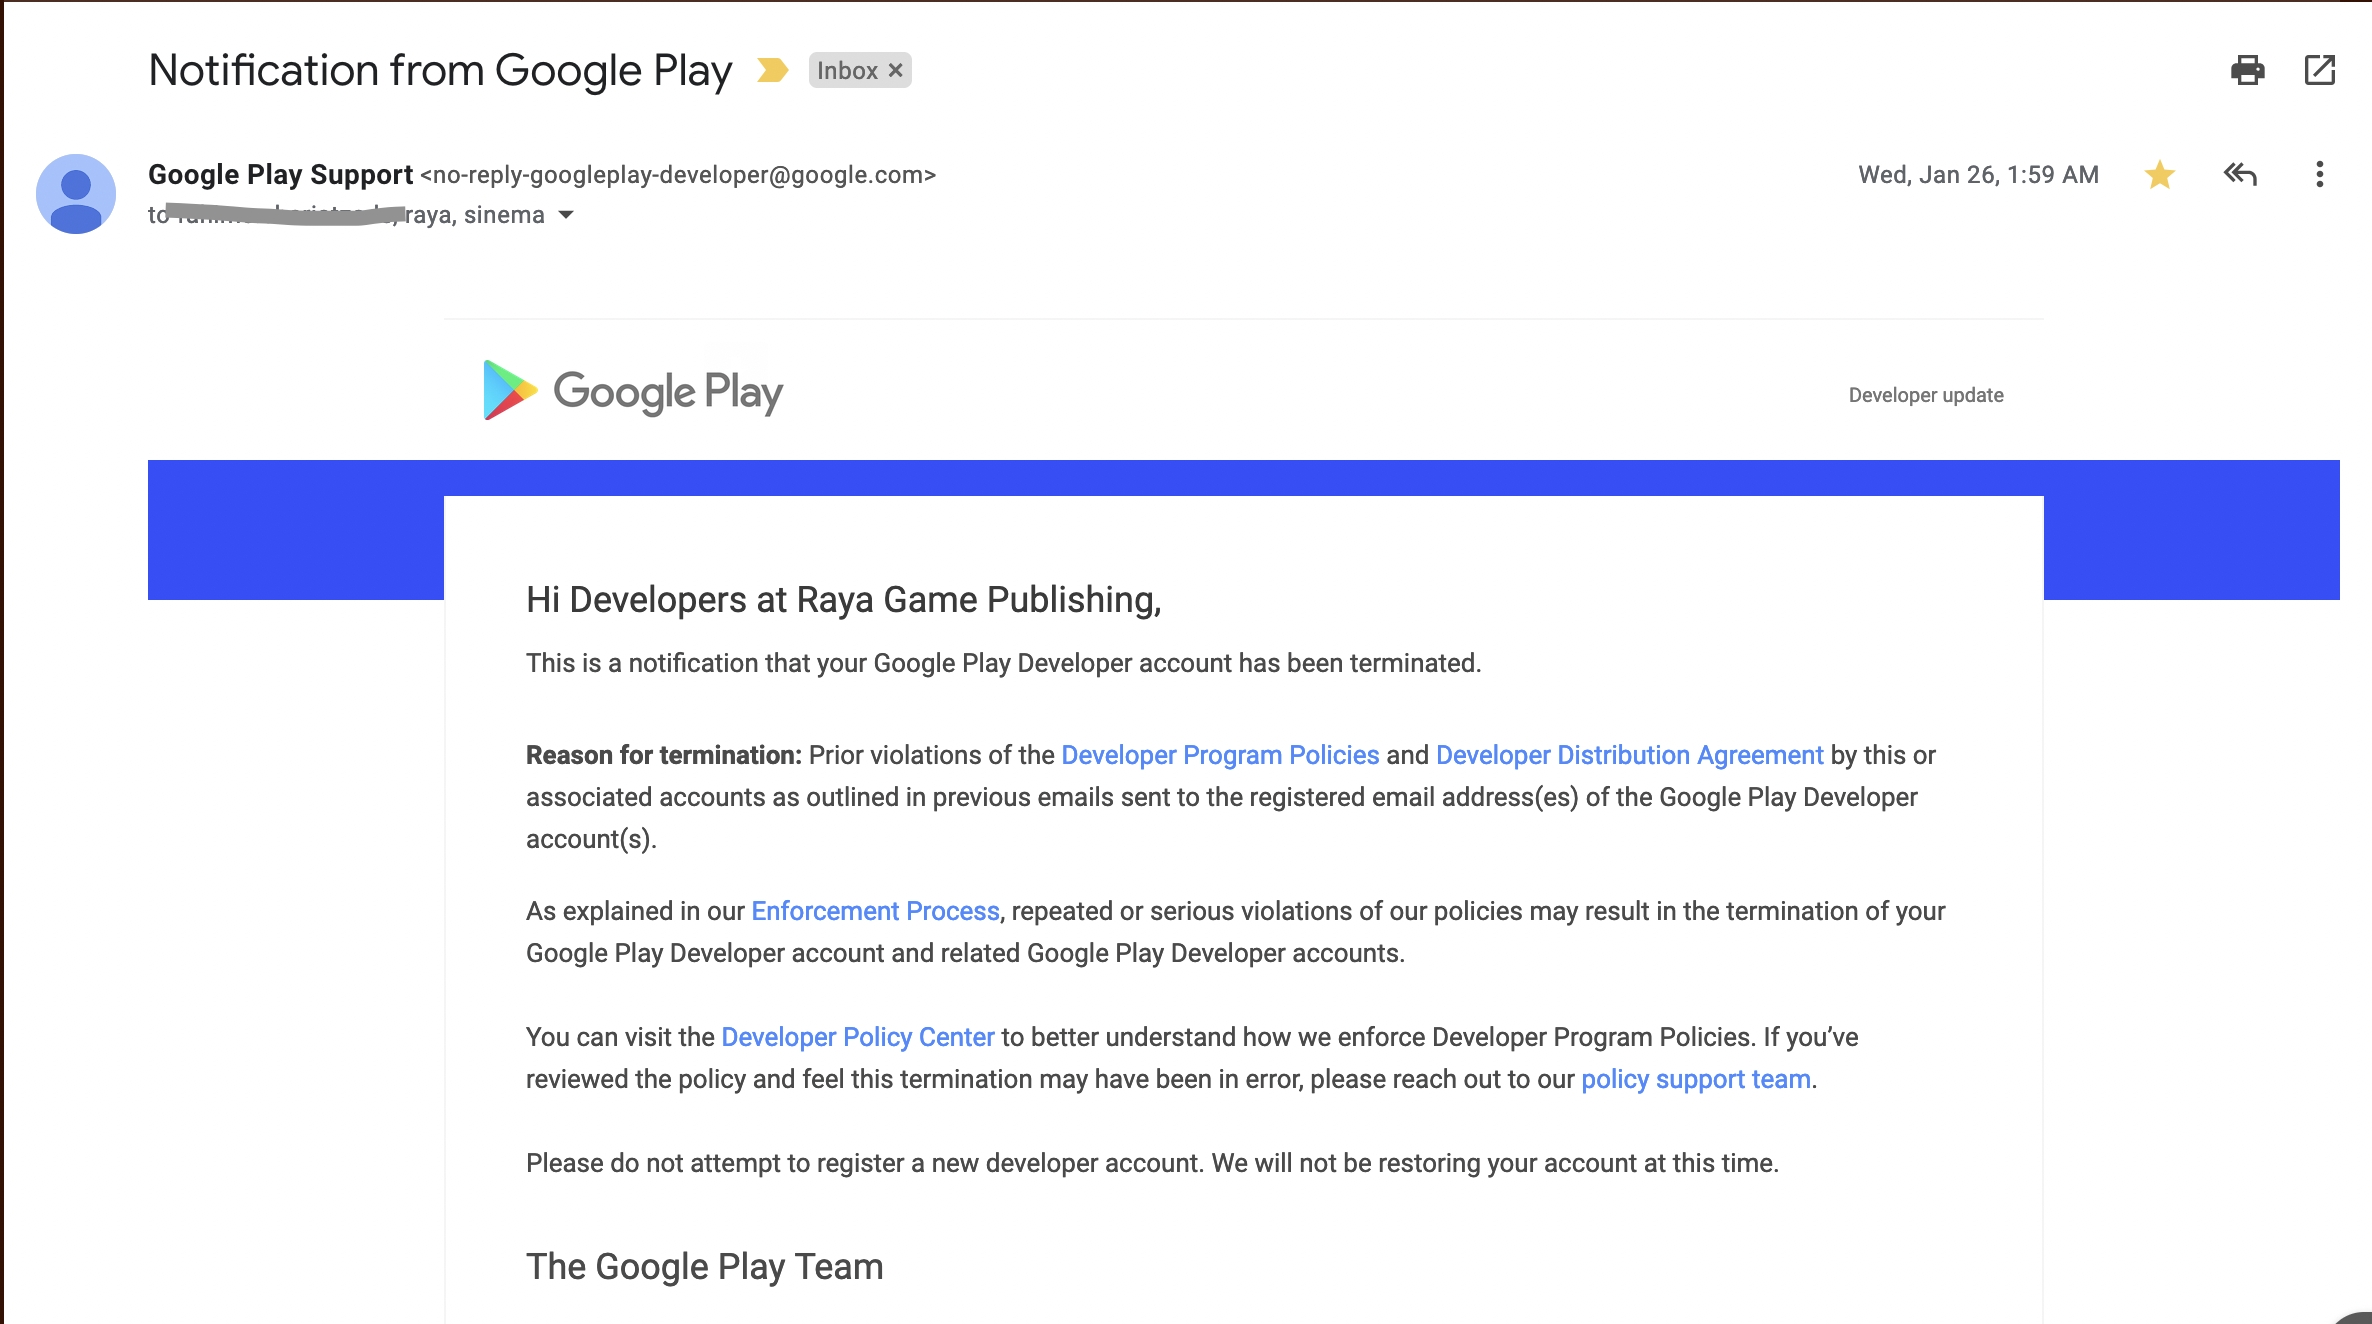 Fui cobrando antes da renovação da assinatura - Comunidade Google Play